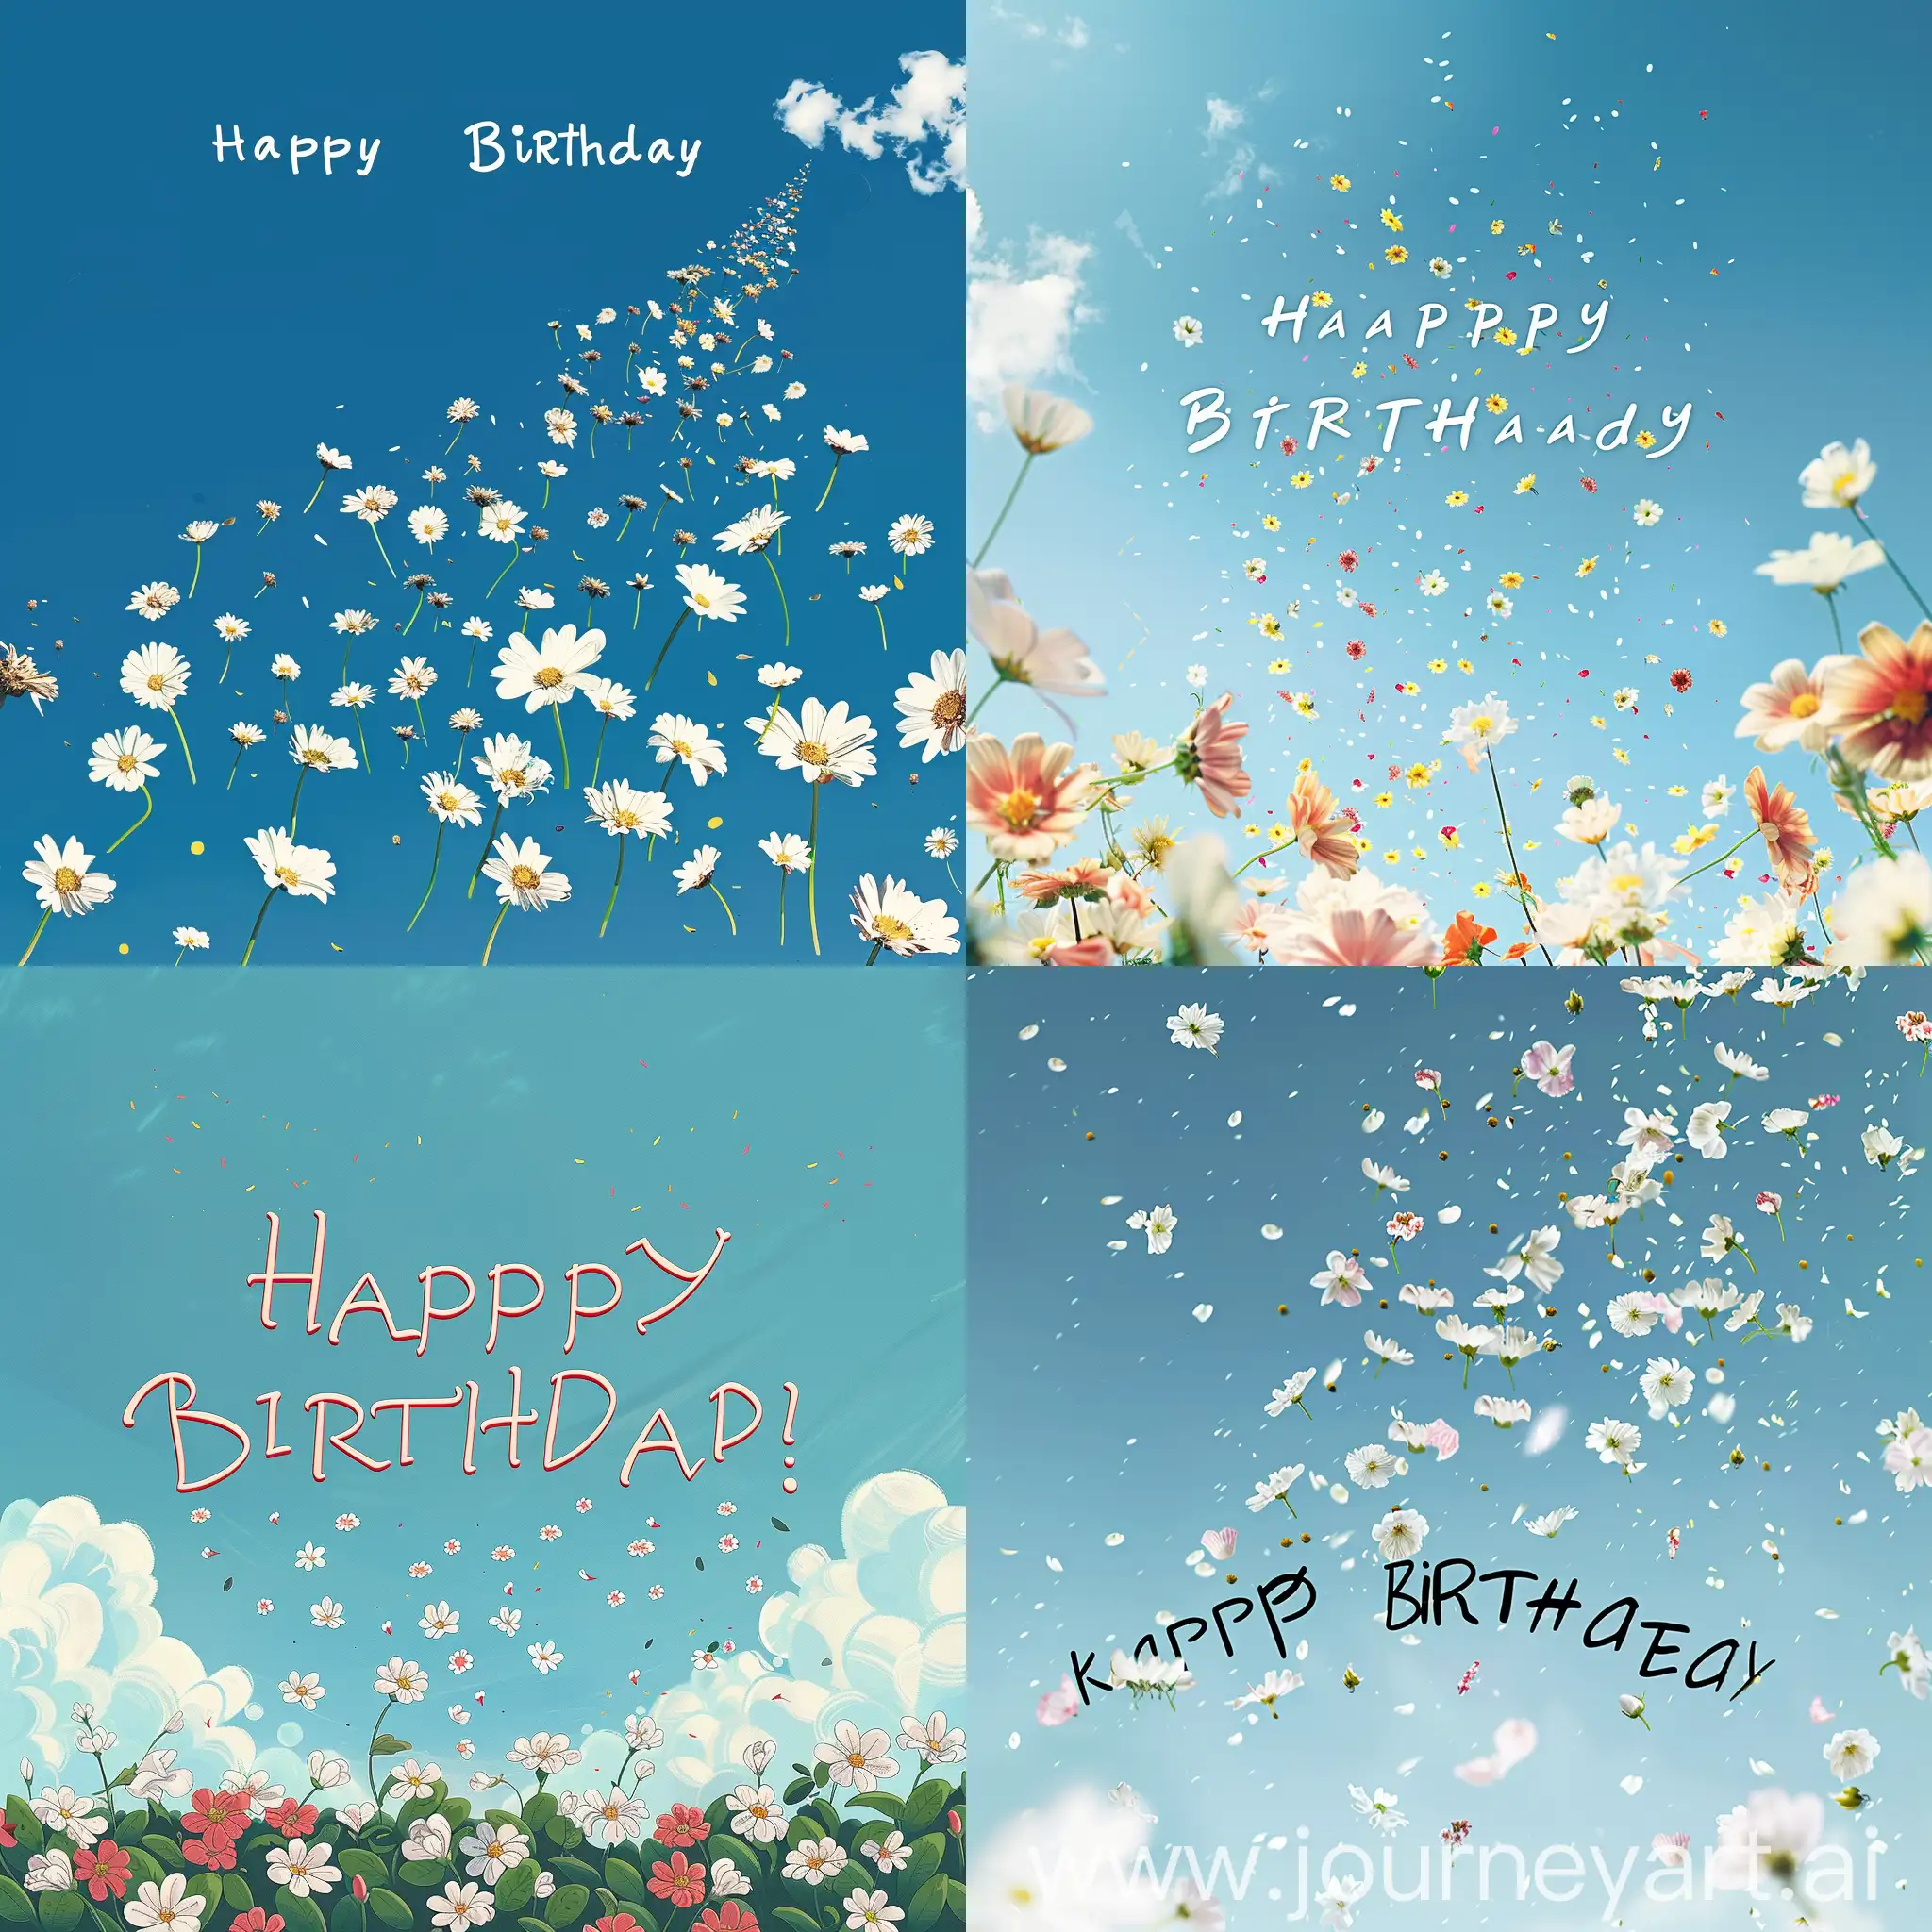 cartão de aniversario com a escrita feliz aniversario malvada com flores caindo do ceu azul